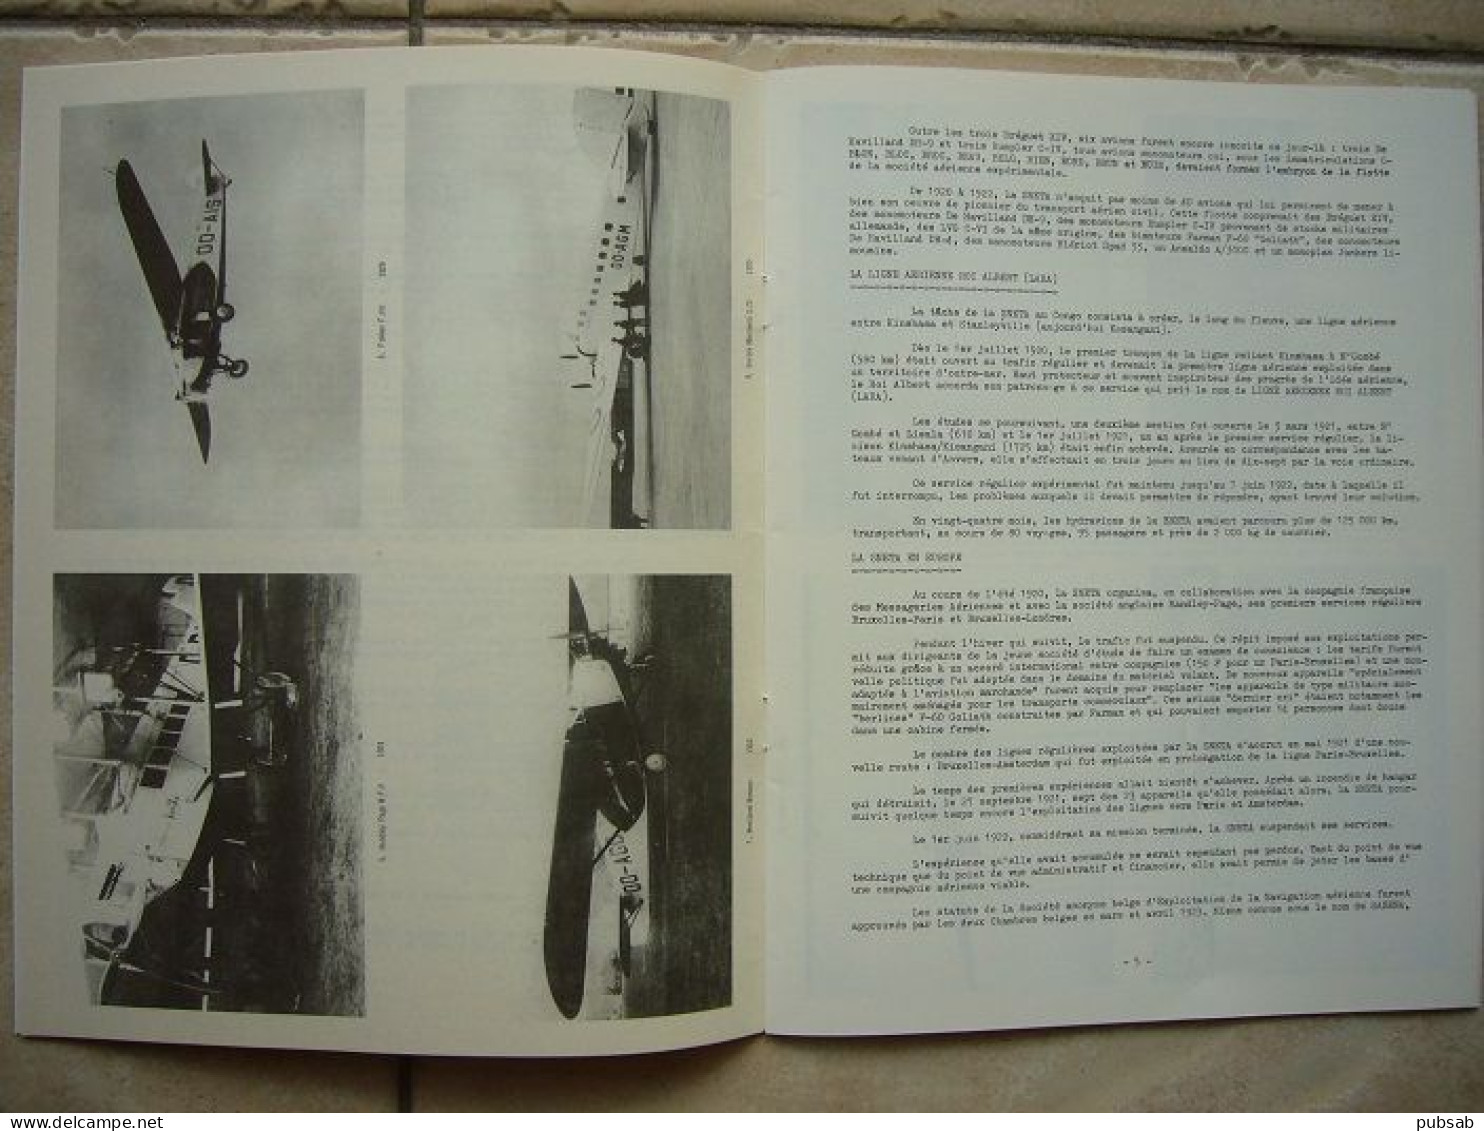 Avion / Airplane / SABENA / Un Demi Siècle D'expérience Du Transport Aérien / 1923 - 1973 / 20 Pages - Magazines Inflight